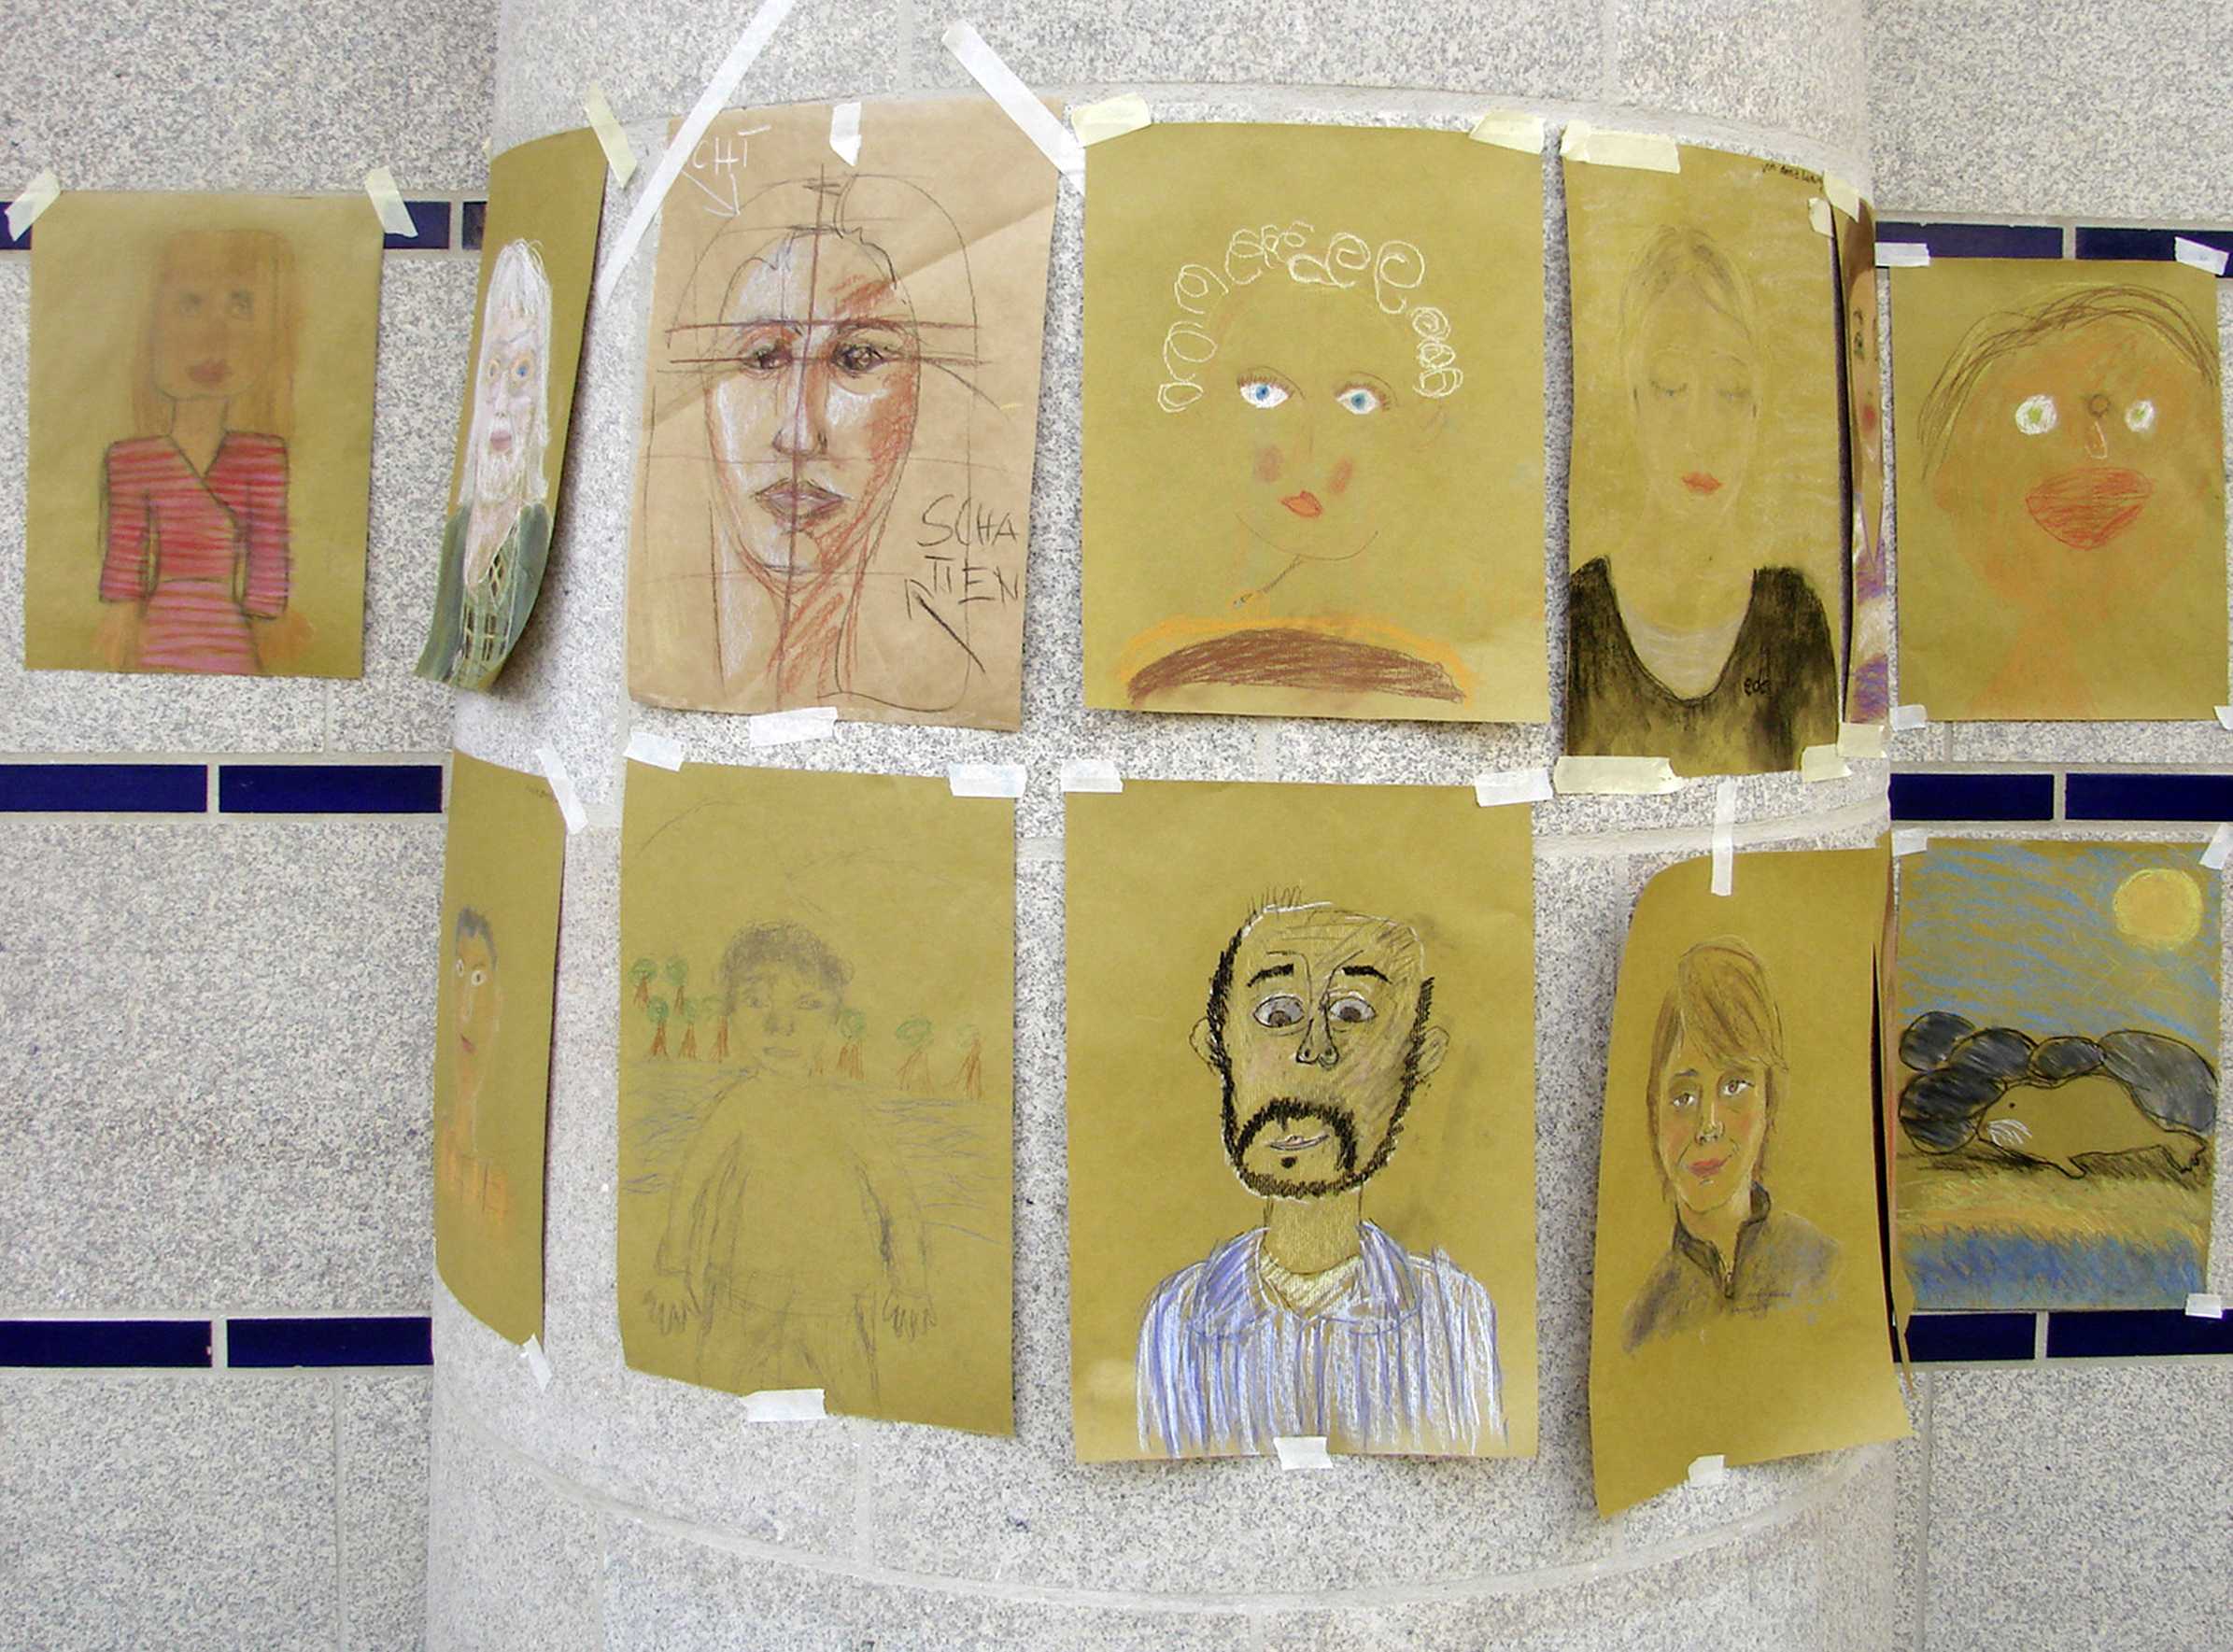 Die Abbildung zeigt von Jugendlichen gestaltete Porträts, die an einer Wand im Museum präsentiert werden. Die Fotoaufnahme stammt von Pirko Schröder.